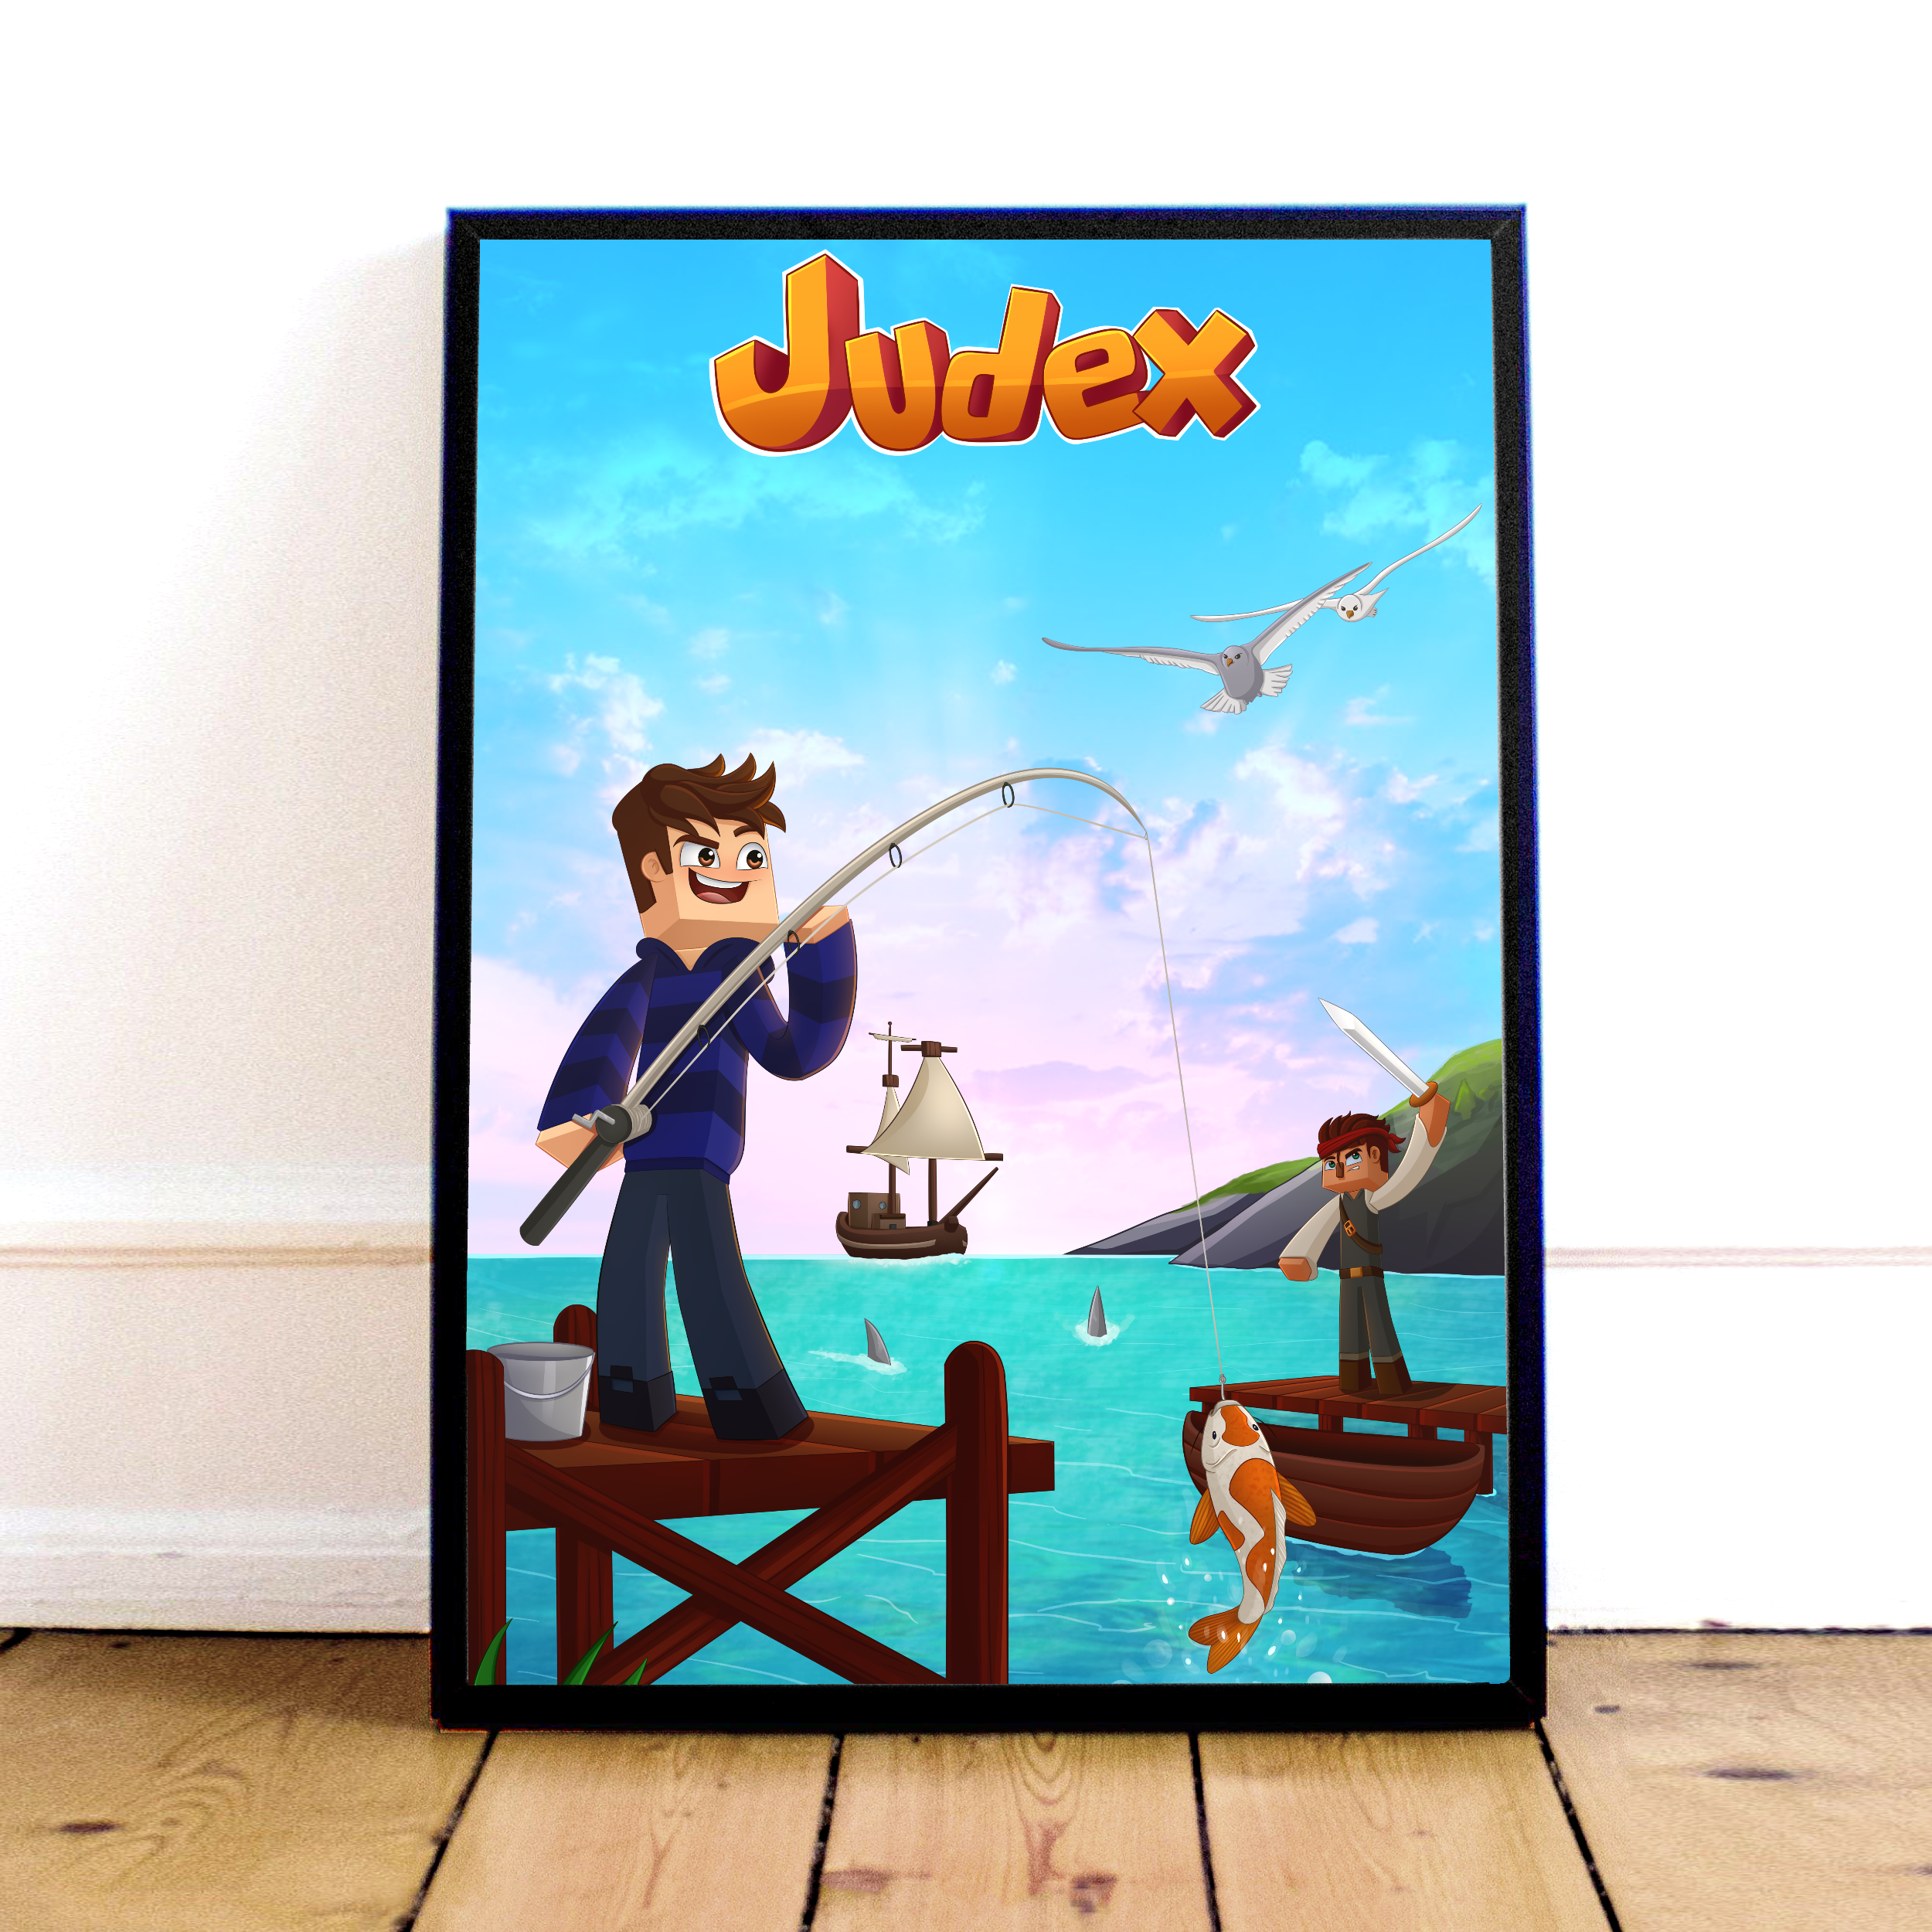 Judex Pirat Plakat